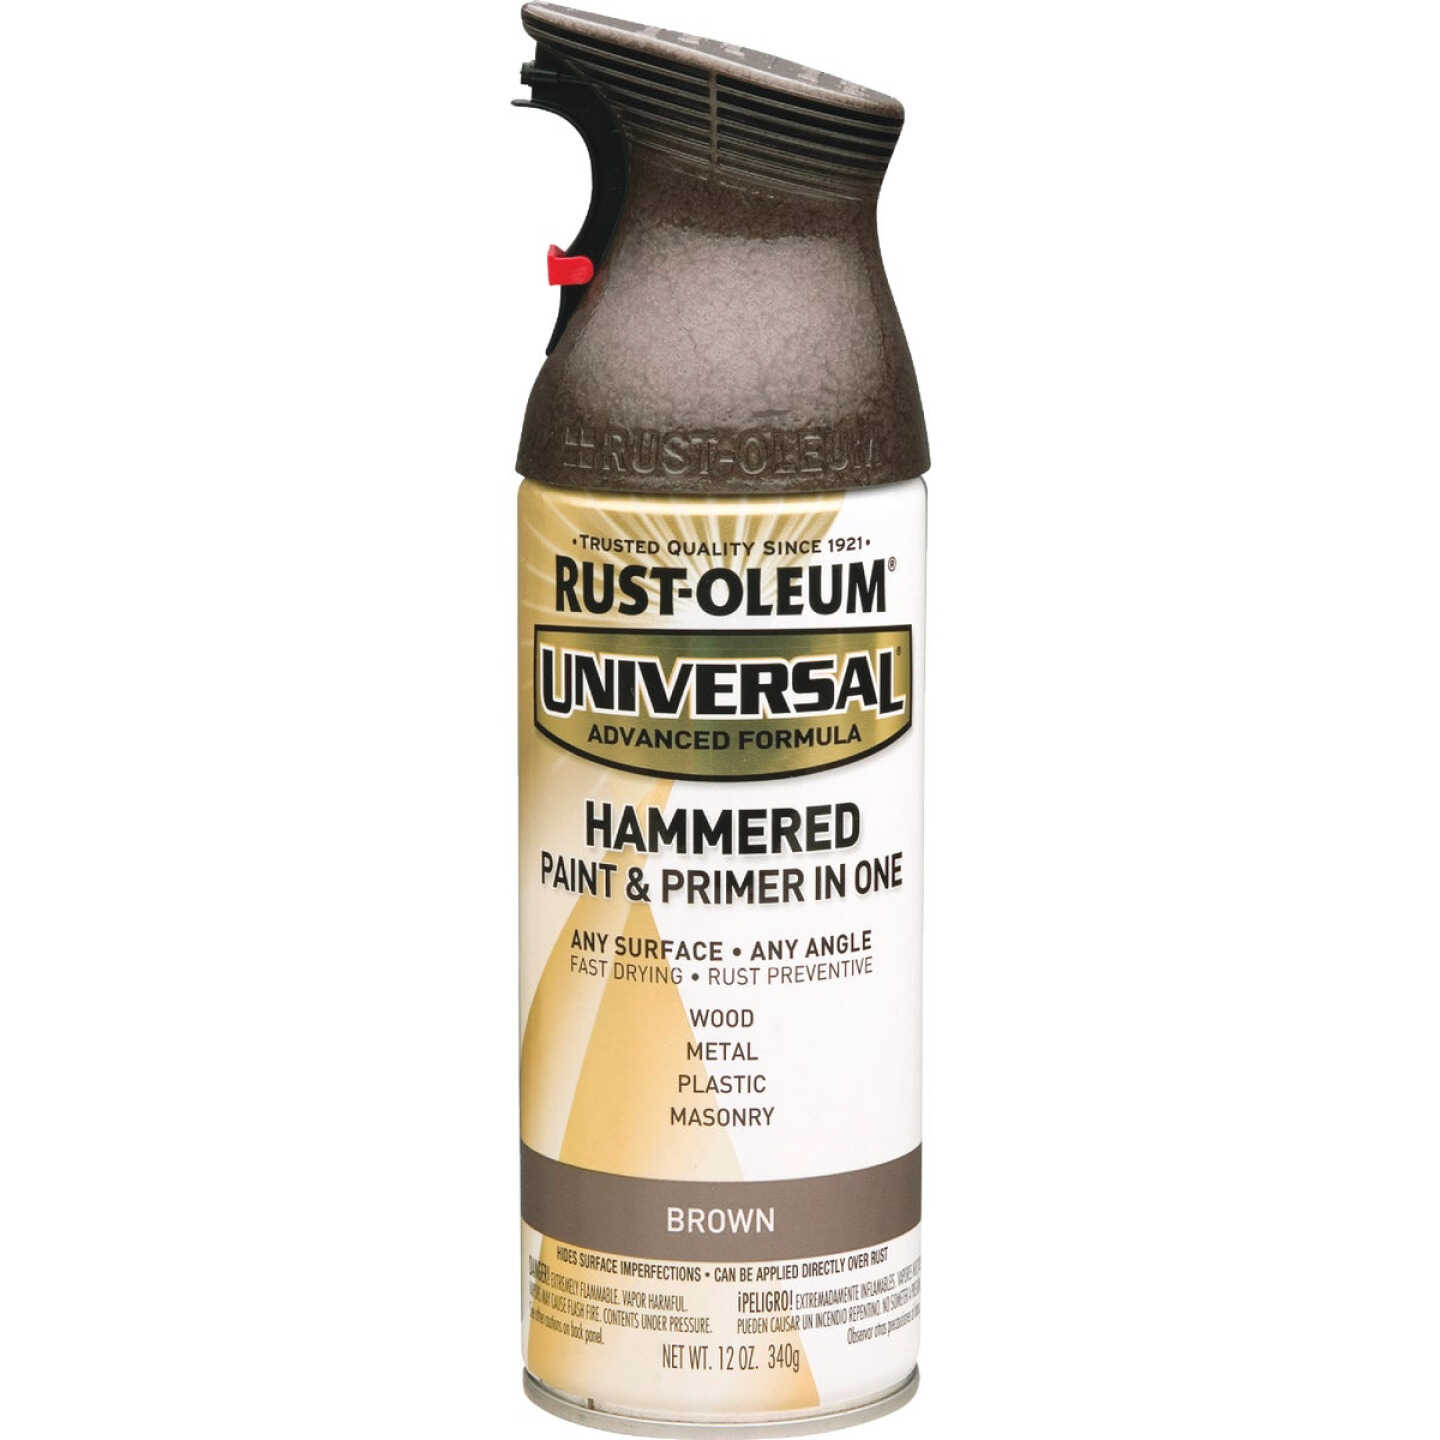 Rust-Oleum Stops Rust 12 oz. Textured Metallic Silver Protective